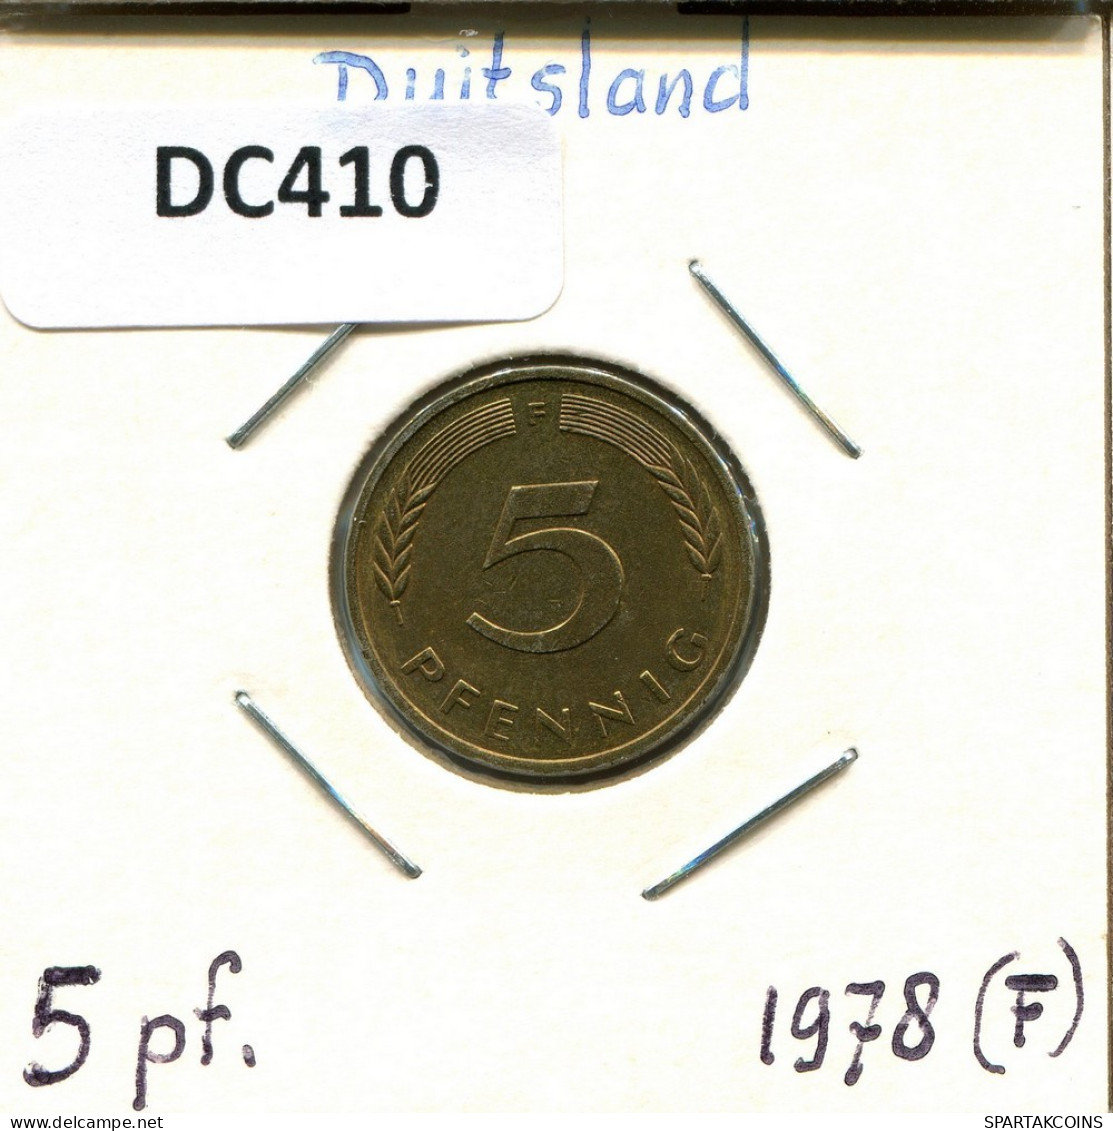 5 PFENNIG 1978 F WEST & UNIFIED GERMANY Coin #DC410.U.A - 5 Pfennig